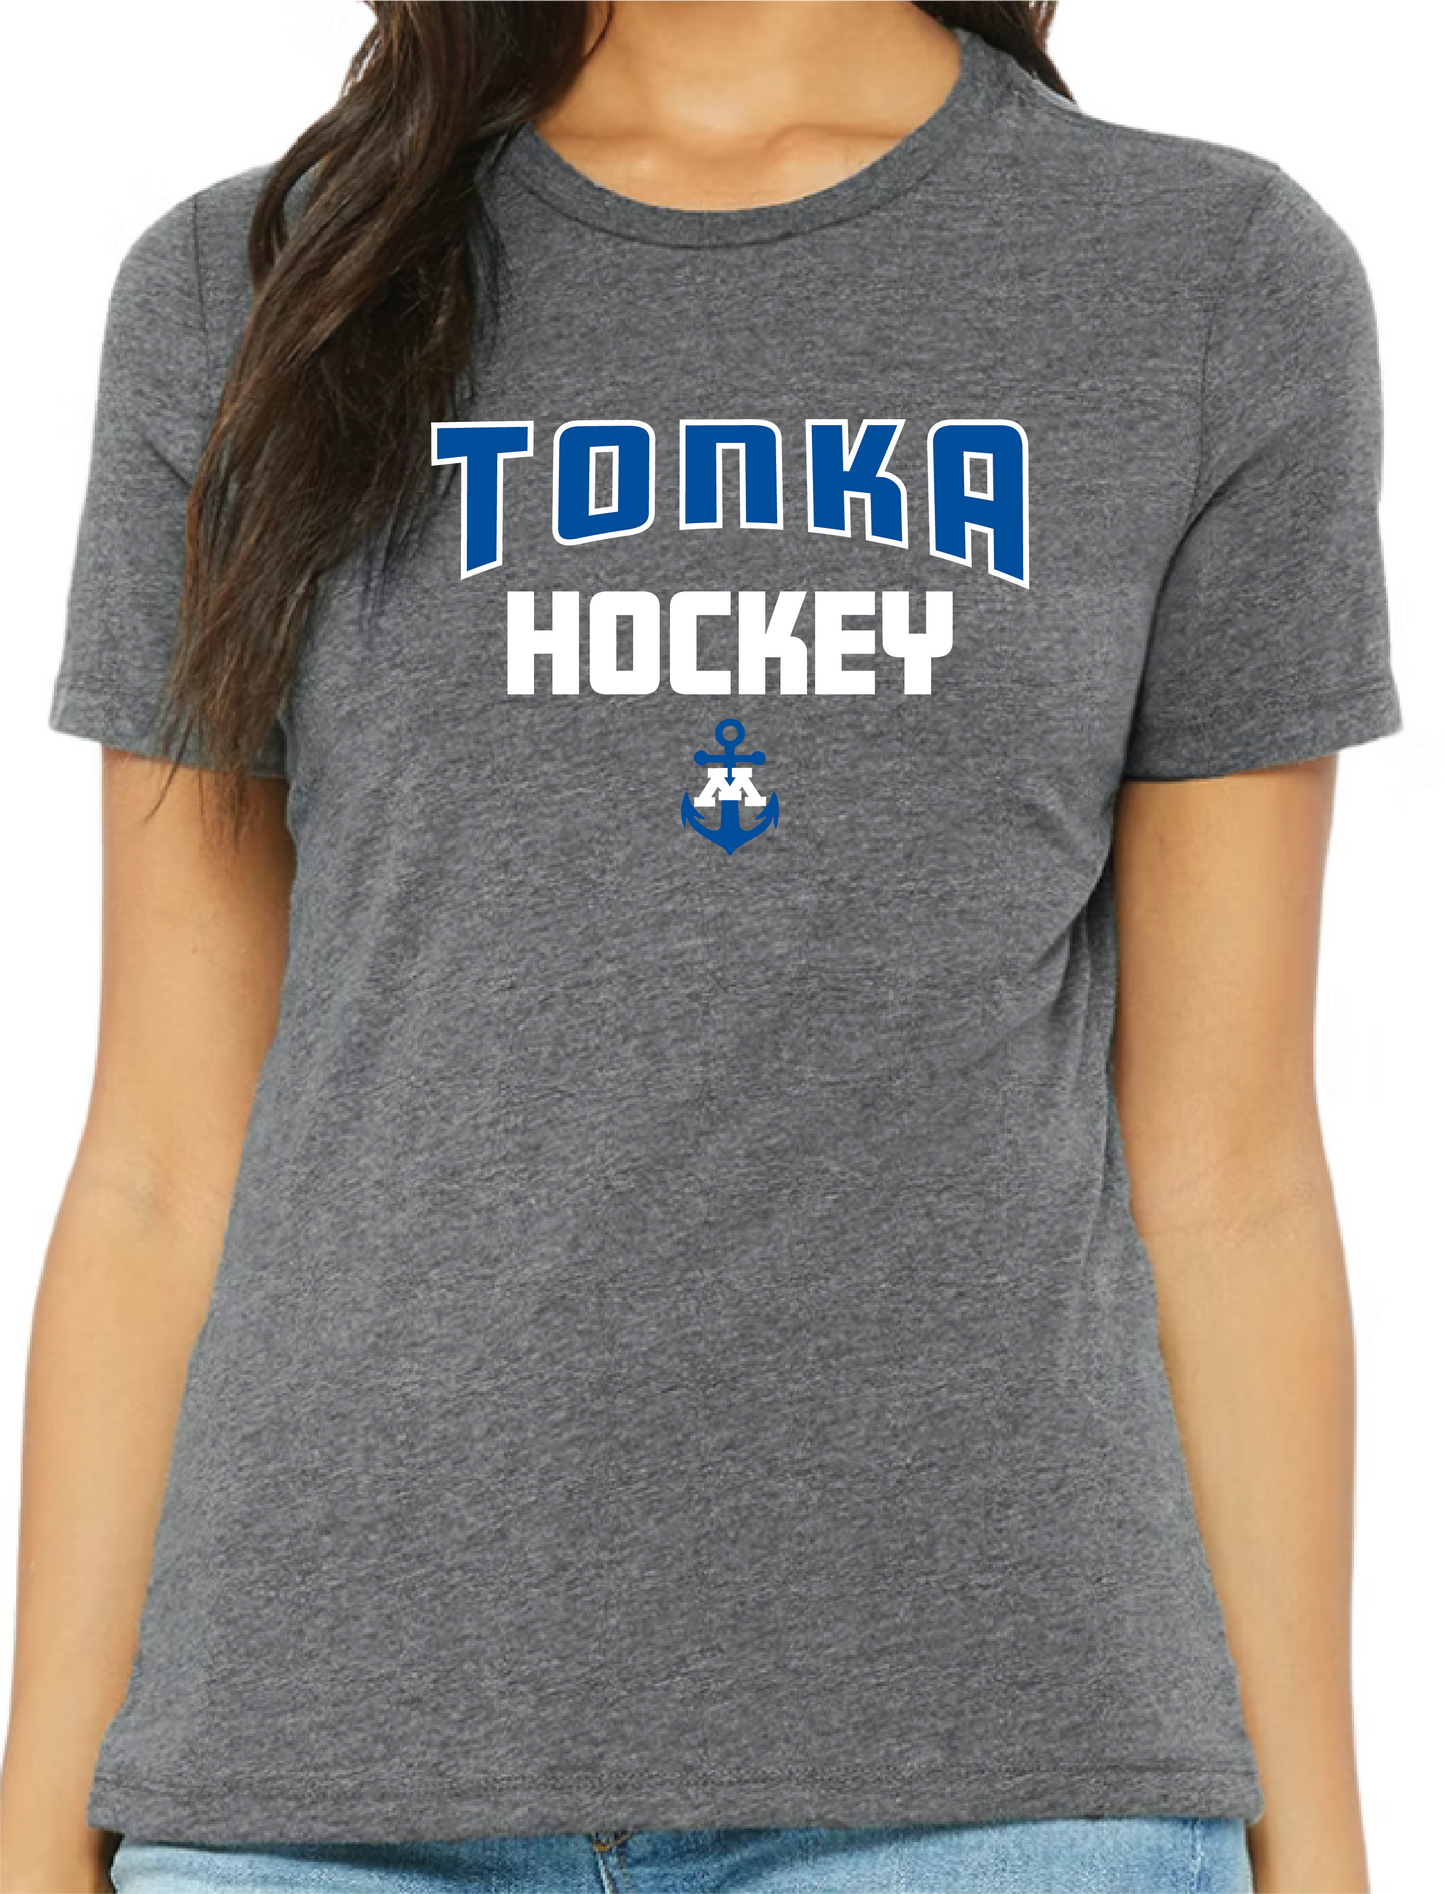 Tonka Hockey Small Anchor Heather Graphite